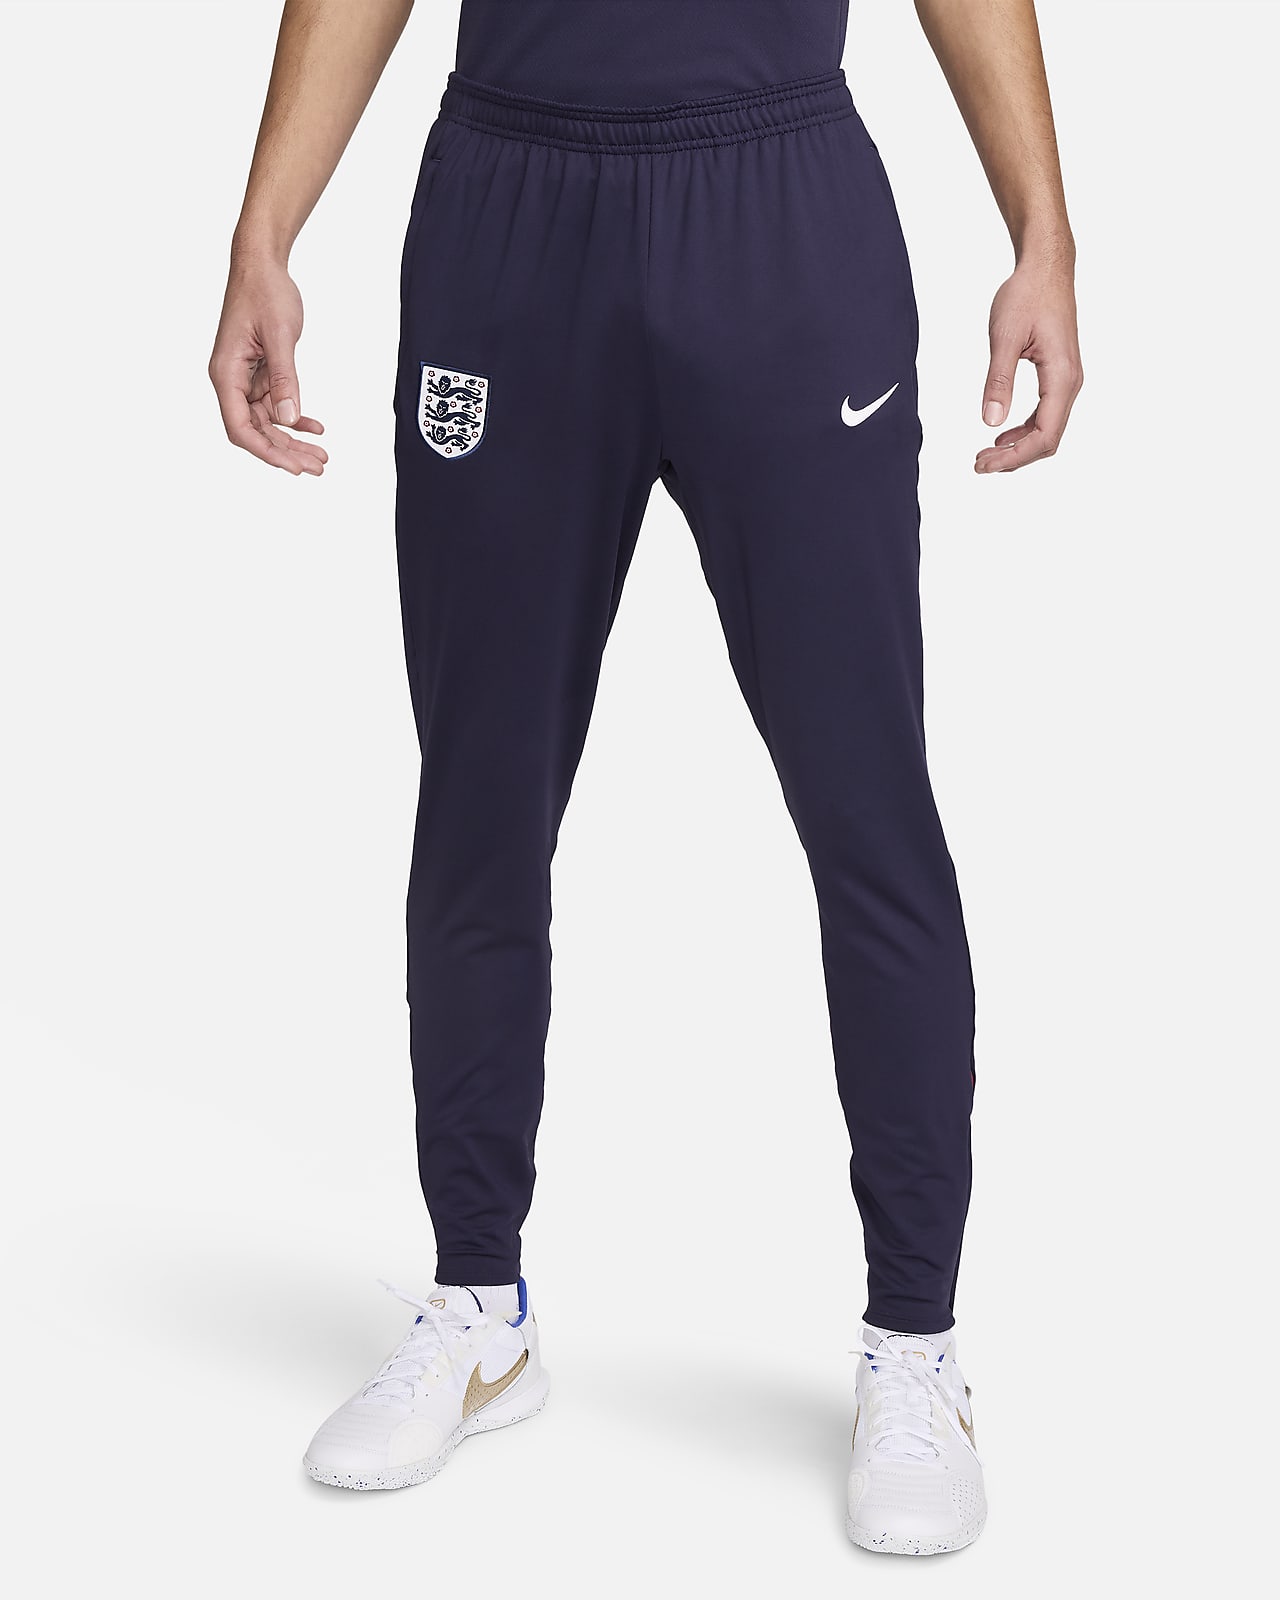 Engeland Strike Nike Dri-FIT knit voetbalbroek voor heren